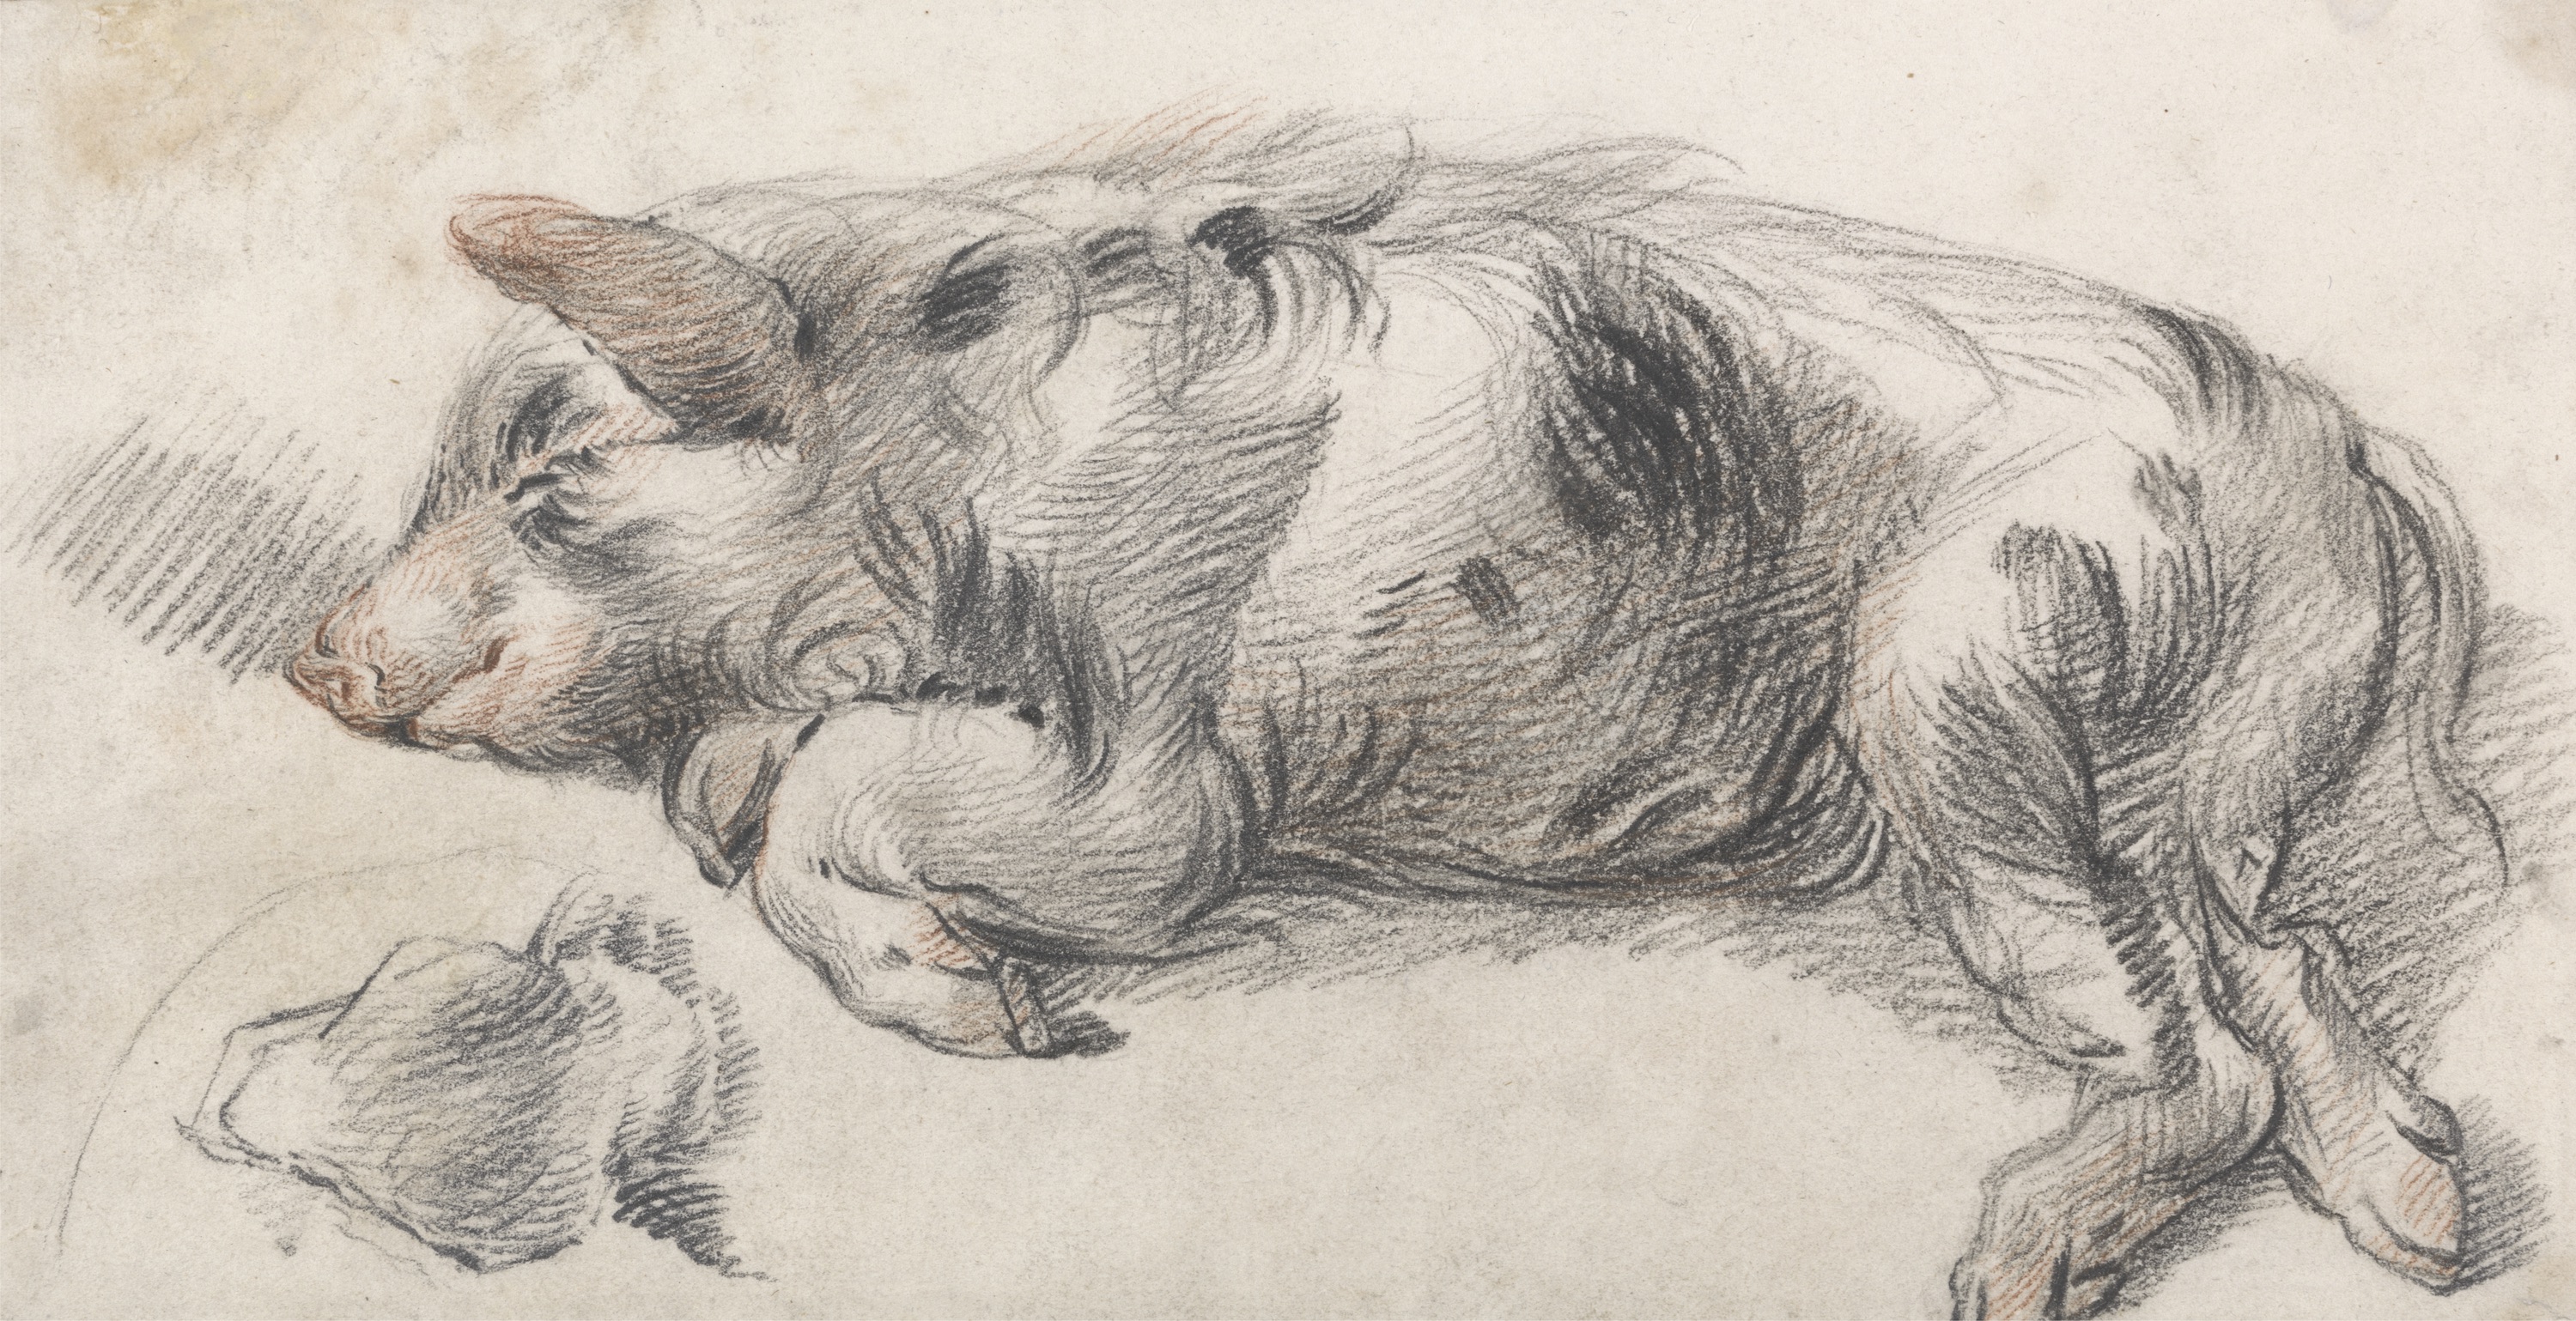 Cerdo durmiendo by James Ward - 1ra mitad del siglo XIX - 26 x 14 cm Yale Center for British Art